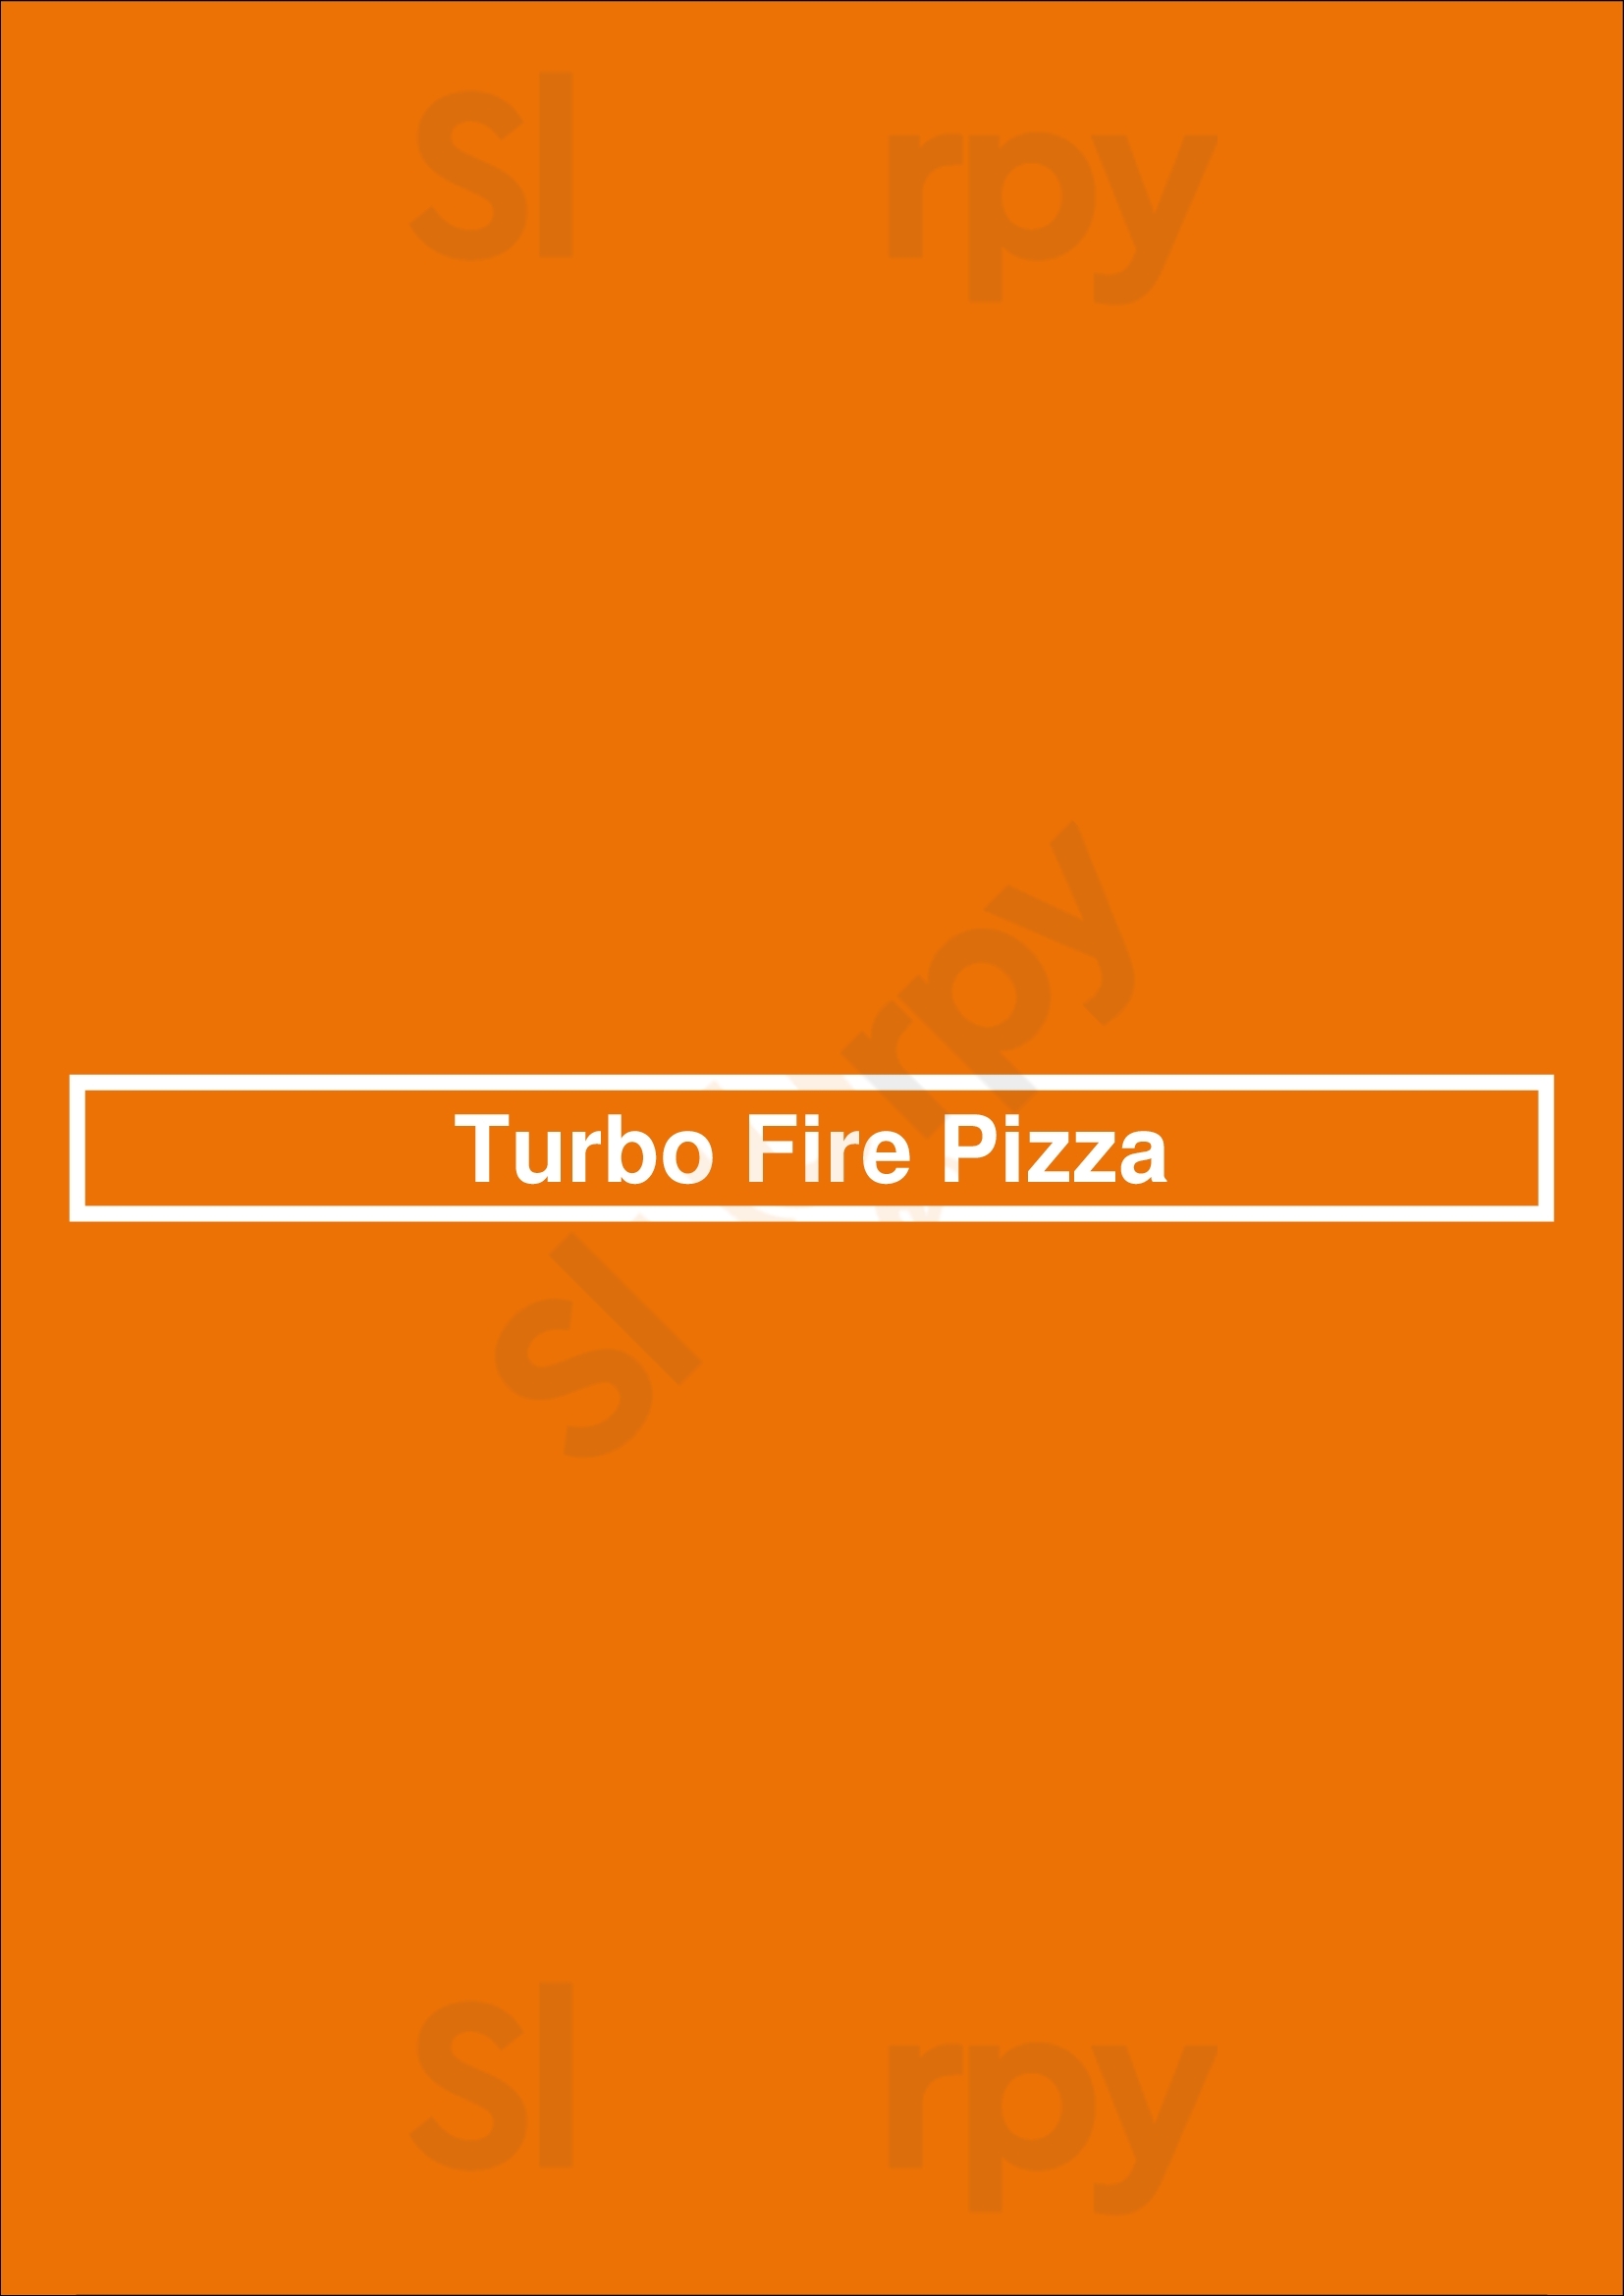 Turbo Fire Pizza Springfield Menu - 1